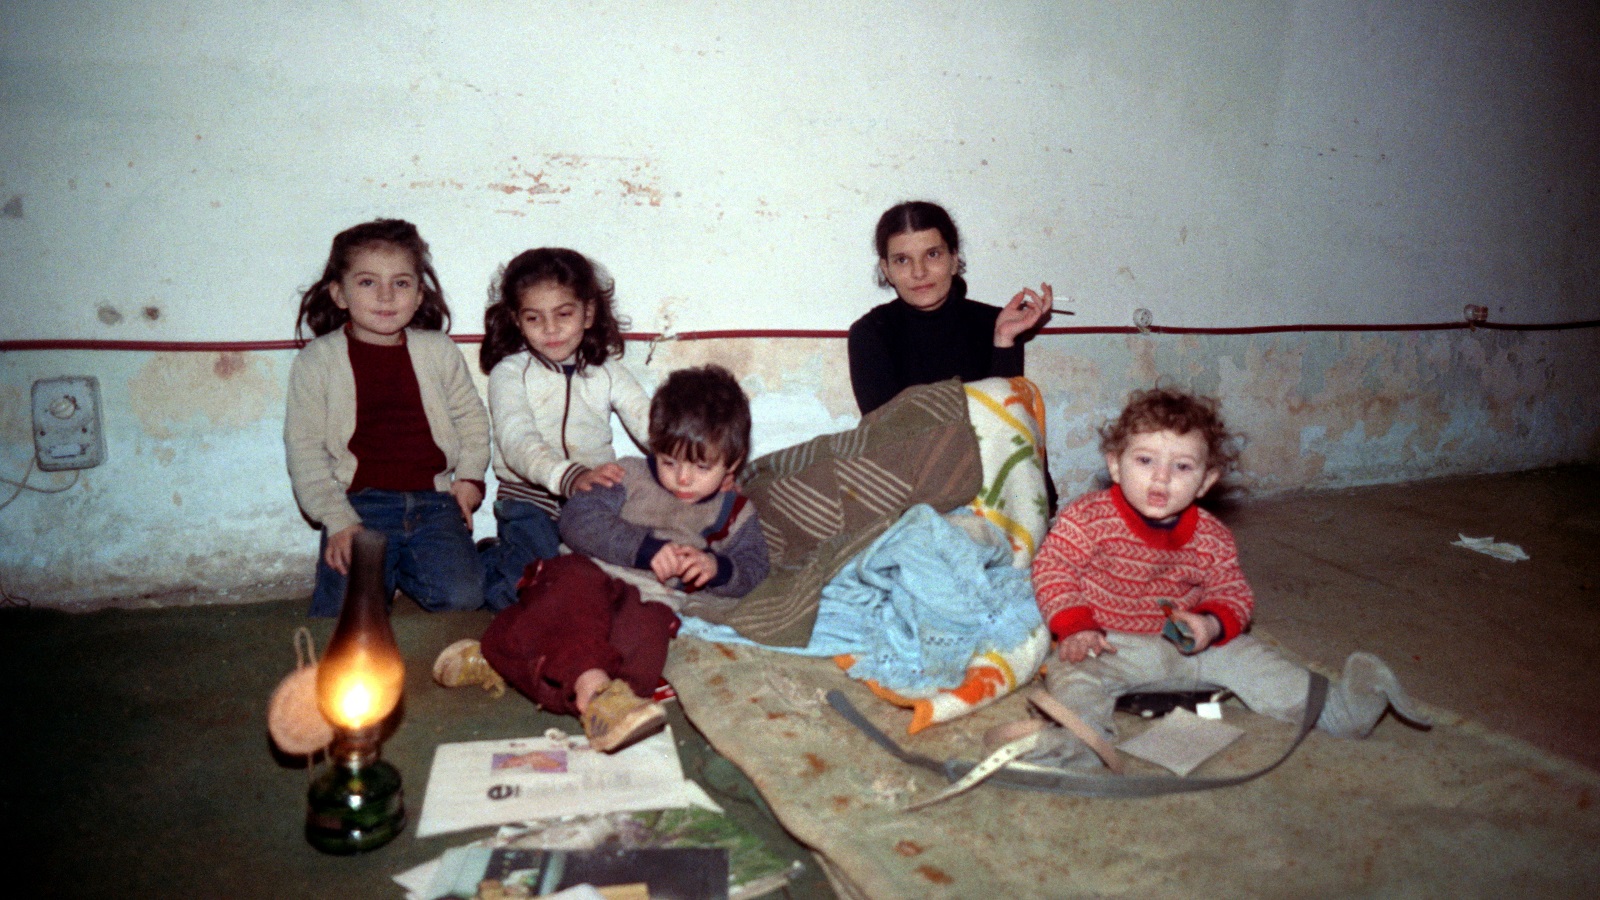 عائلة محتمية من القصف في أحد ملاجئ "بيروت الغربية" خلال معارك "القوات اللبنانية" والجيش اللبناني 1990 (غيتي)